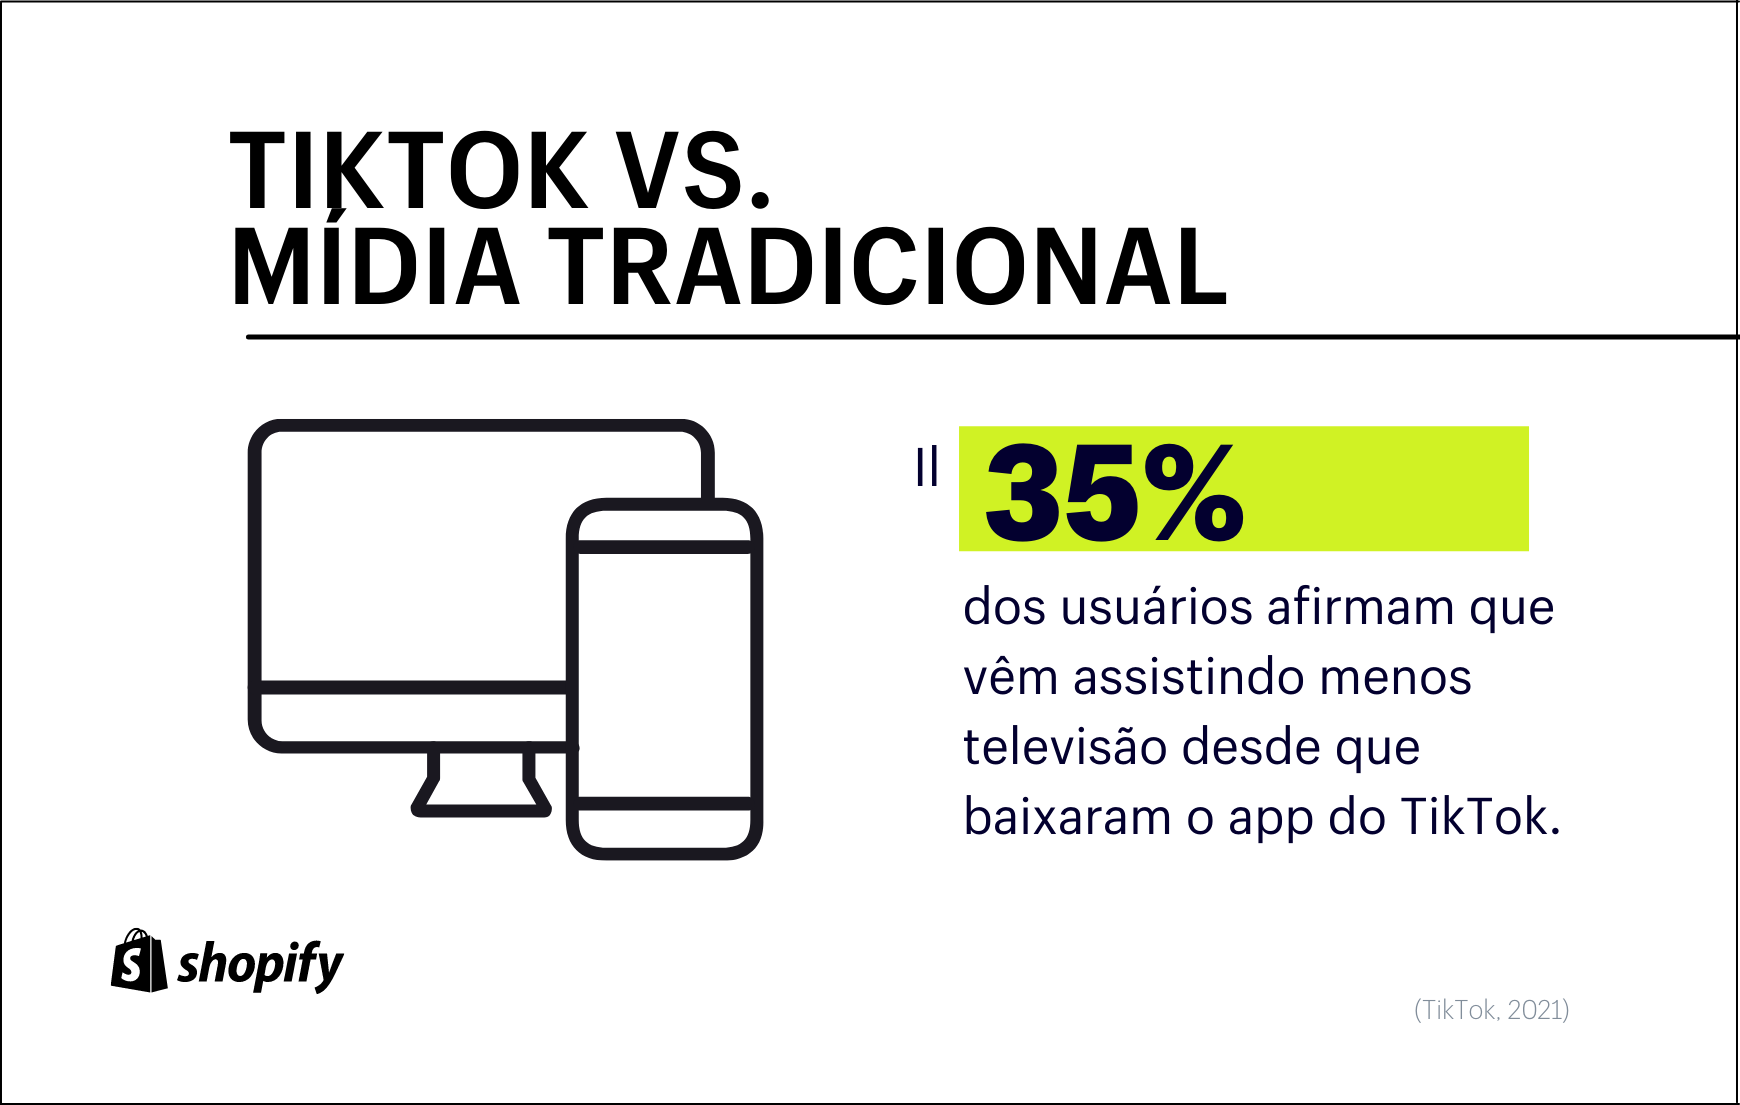 Infográfico com fundo branco. No primeiro plano, em verde e preto, há a informação de que 35% dos usuários do TikTok passaram a consumir menos conteúdos de TV depois que baixaram o aplicativo.